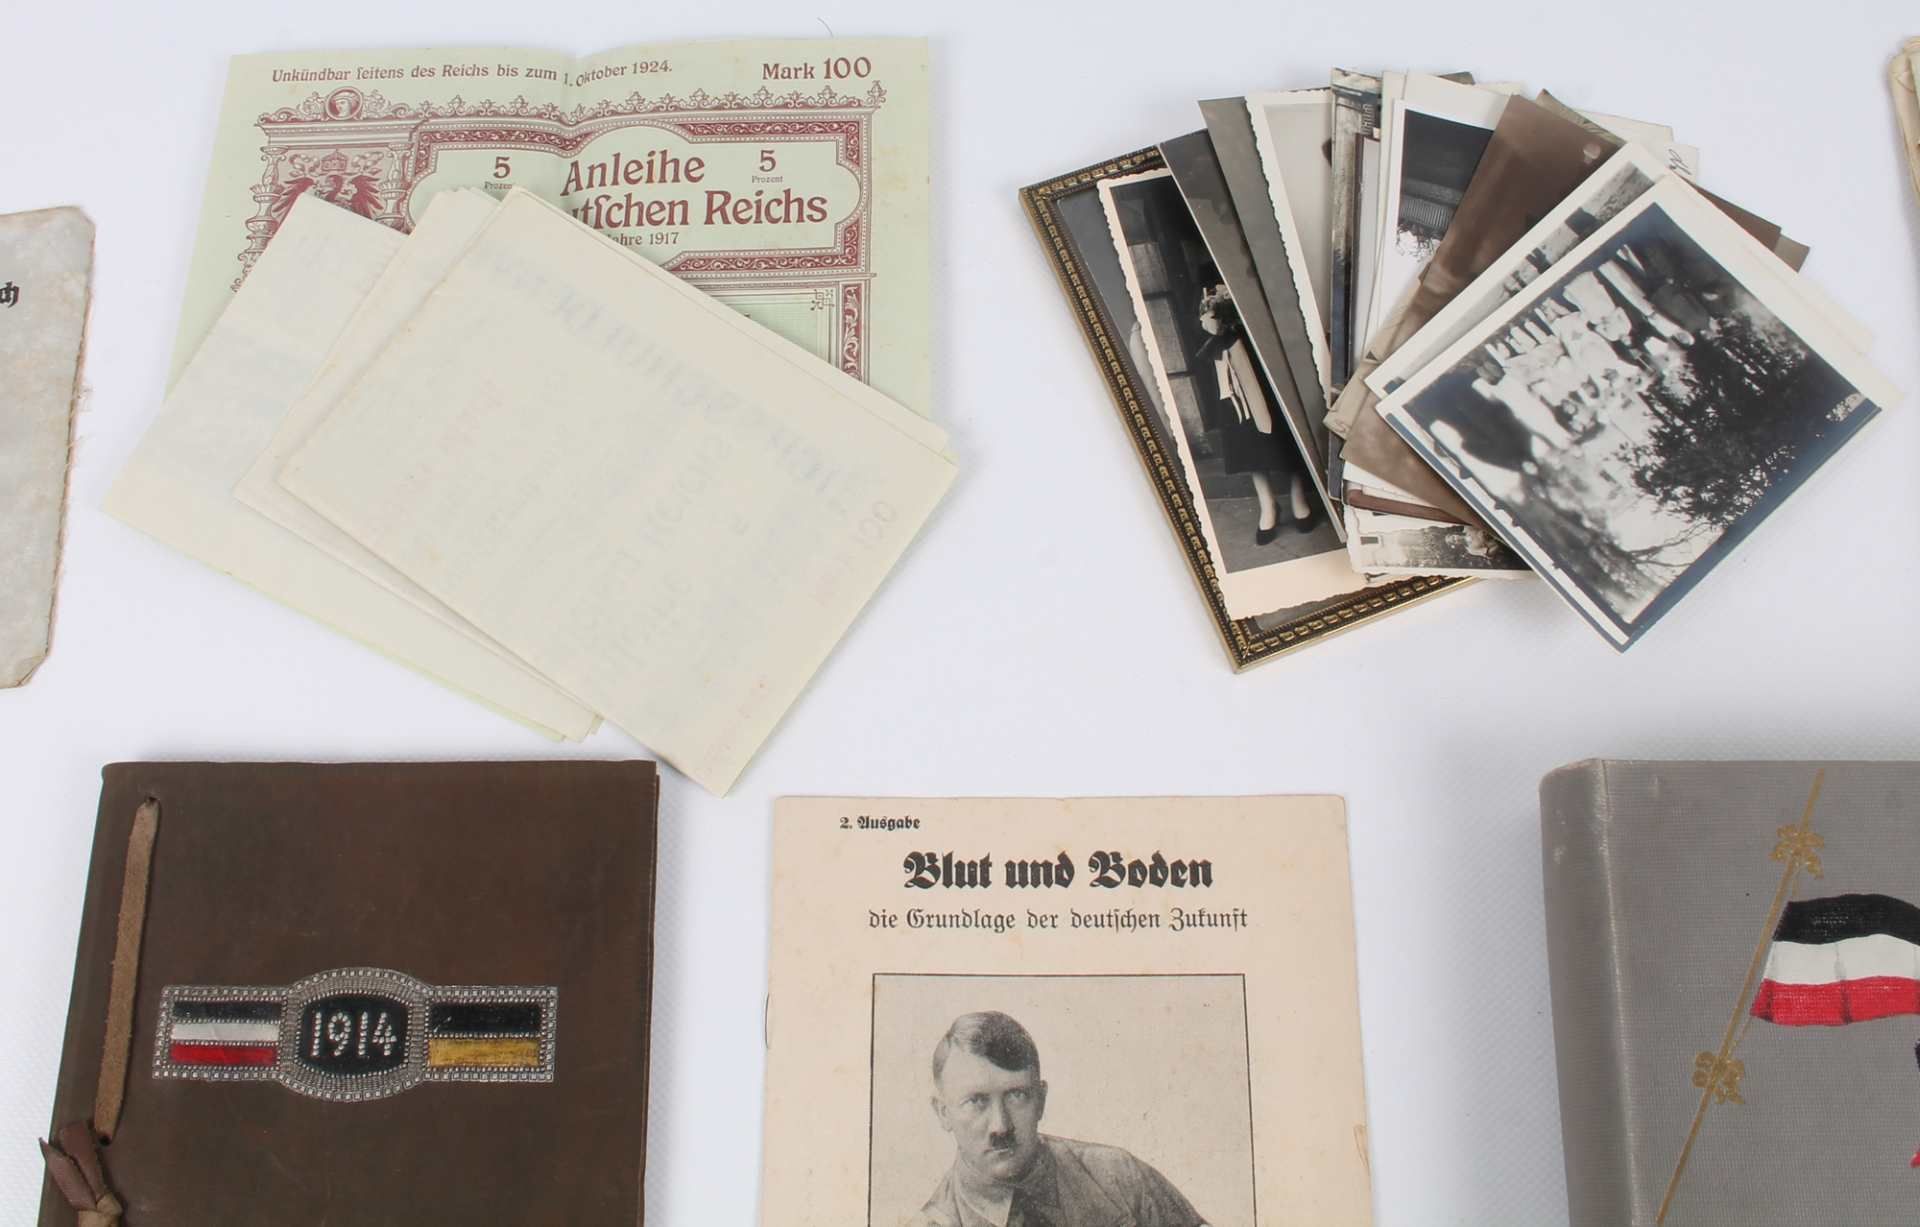 Deutsches Reich - großes Militaria Konvolut u.a. mit Dokumenten, Fotografien und Erinnerungen, - Image 8 of 8